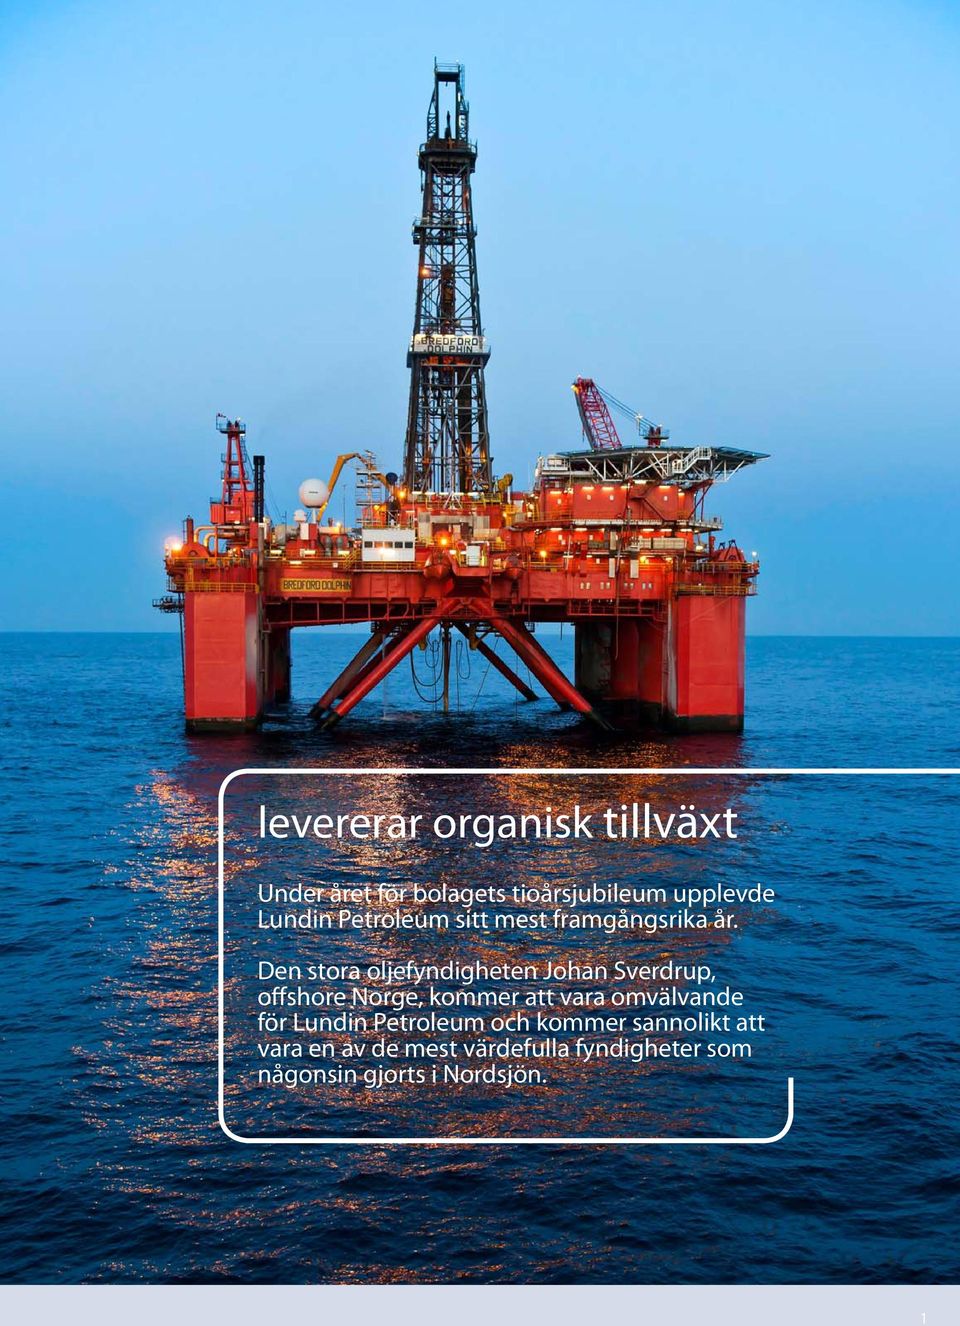 Den stora oljefyndigheten Johan Sverdrup, offshore Norge, kommer att vara